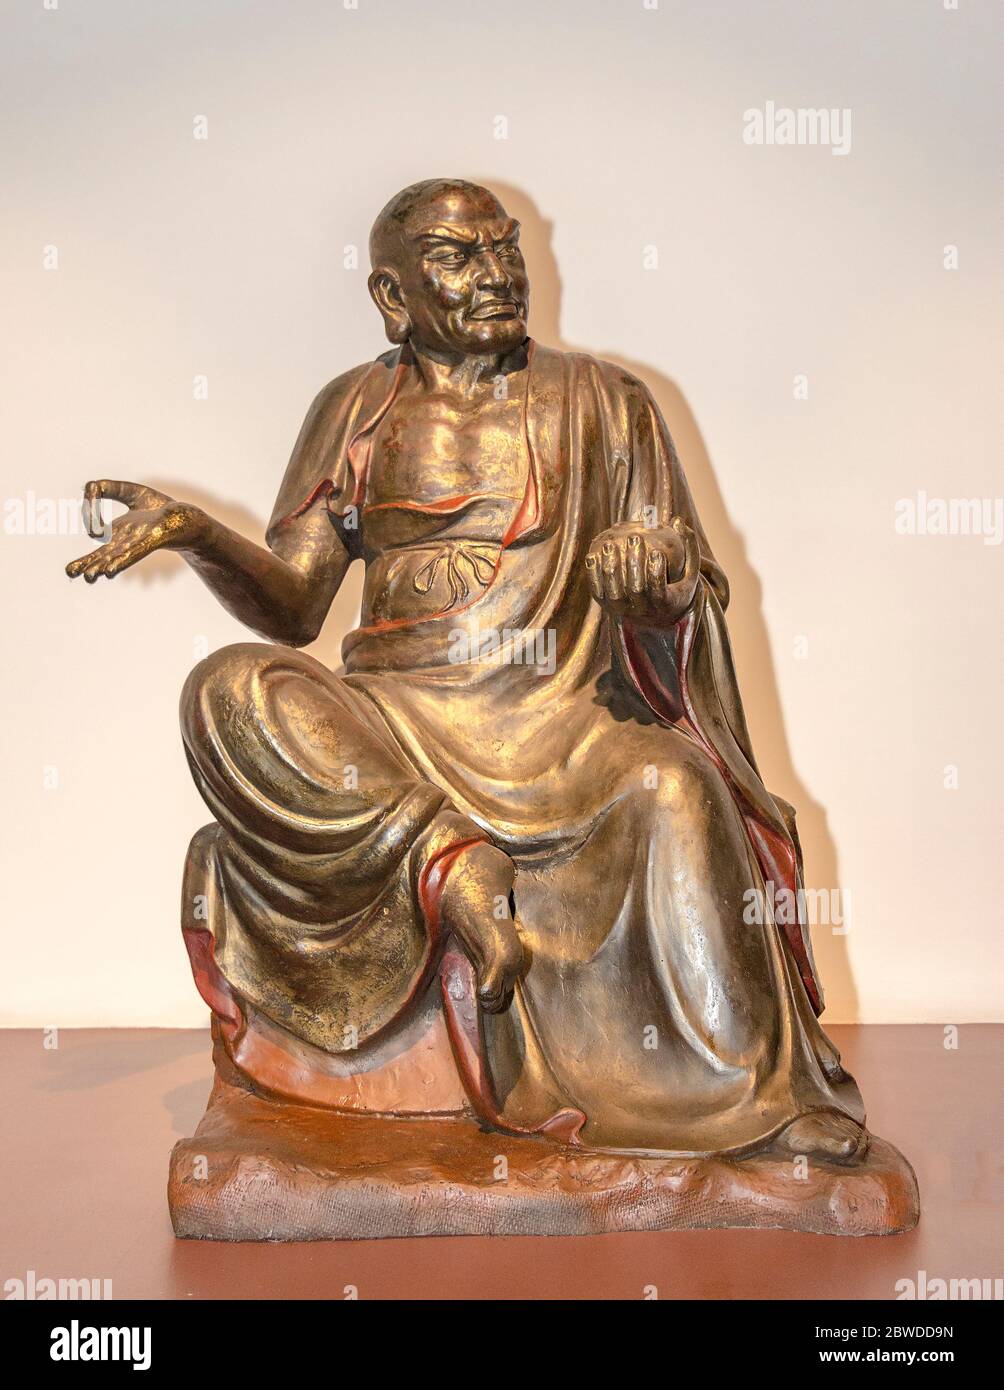 Statue d'arhat, dans le bouddhisme quelqu'un qui a atteint l'illumination ou travaille vers elle. Sur le display, Zhen Qi hui Art Center à Hangzhou Banque D'Images